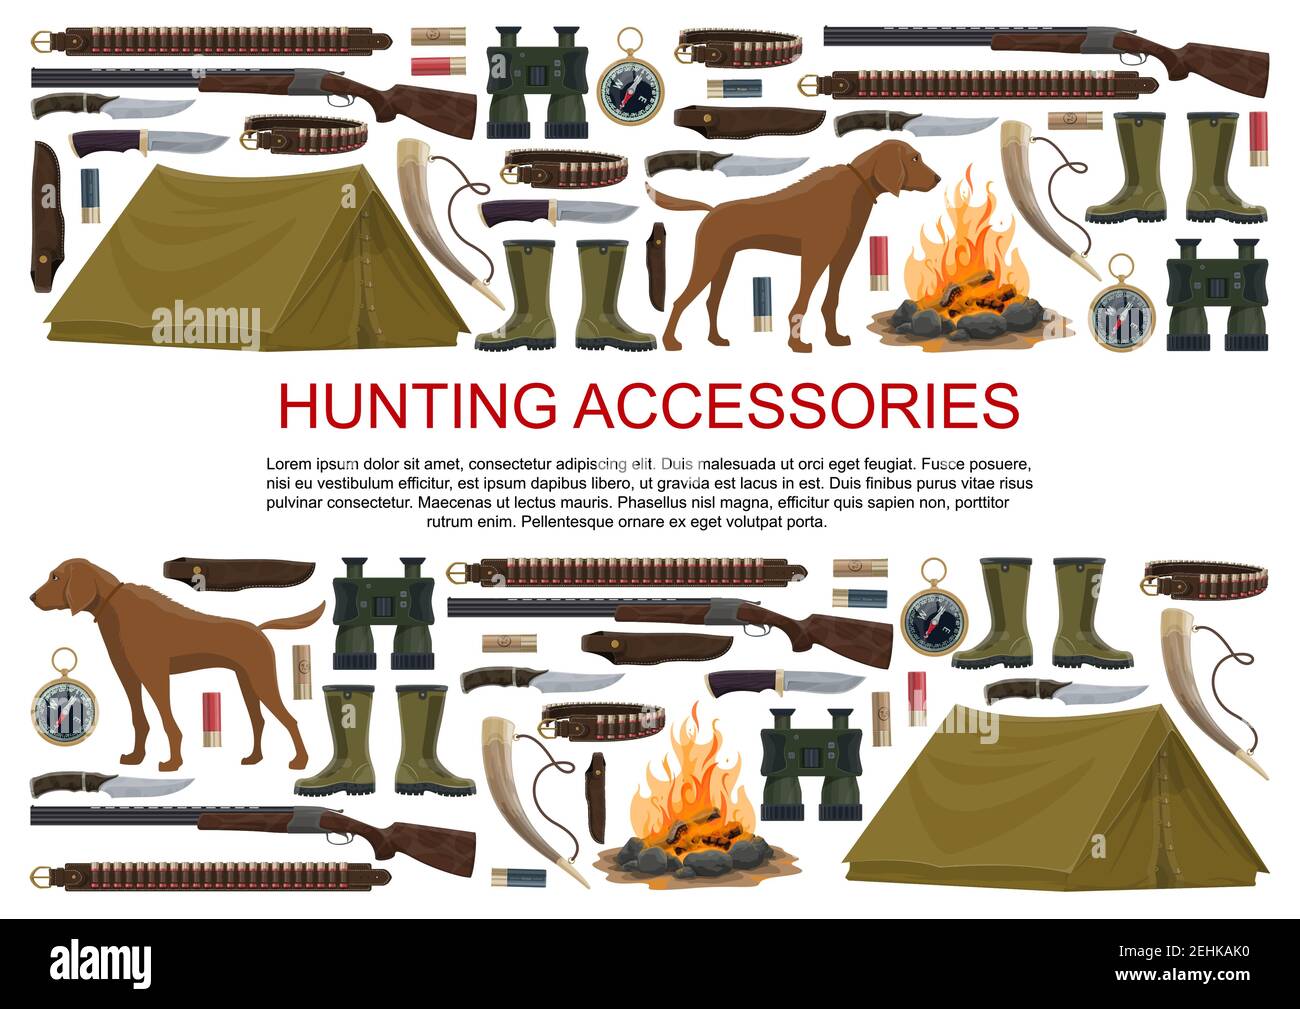 Affiche sur l'équipement de chasse et les accessoires de chasse